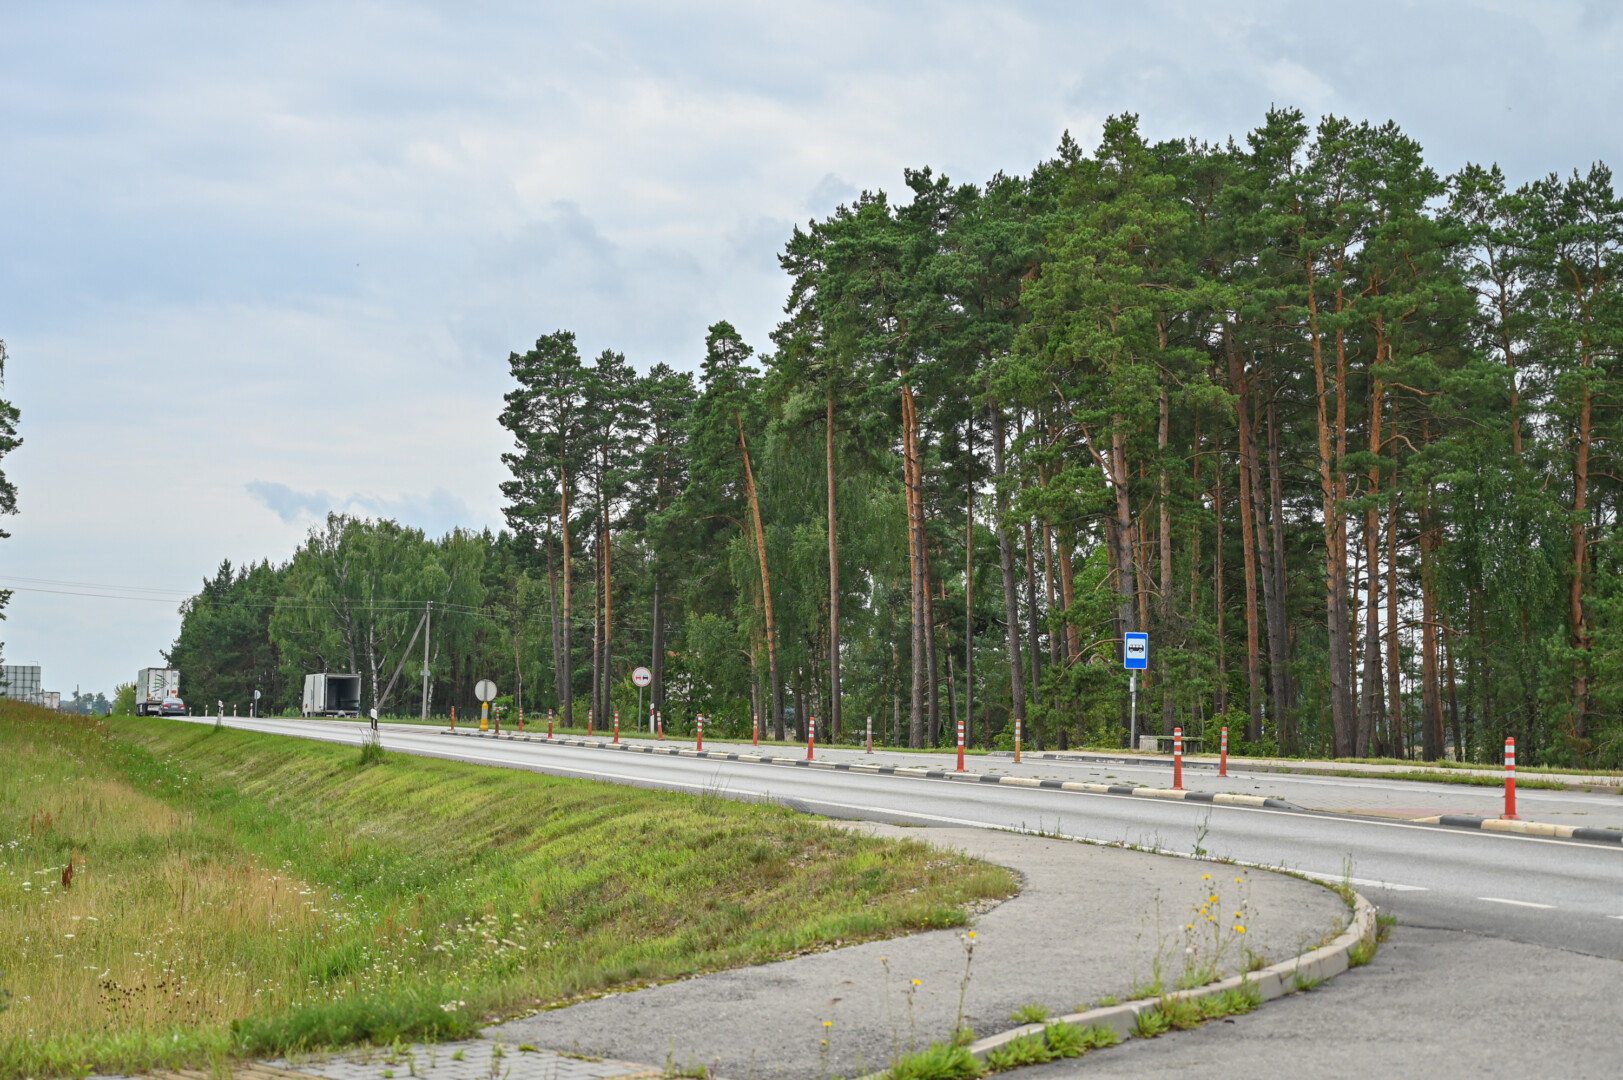 Magistralių kryžkelėje netoli Šilagalio, kur kertasi keliai, vedantys į Rygą, Kauną, Vilnių, Šiaulius, turėtų iškilti krematoriumas.